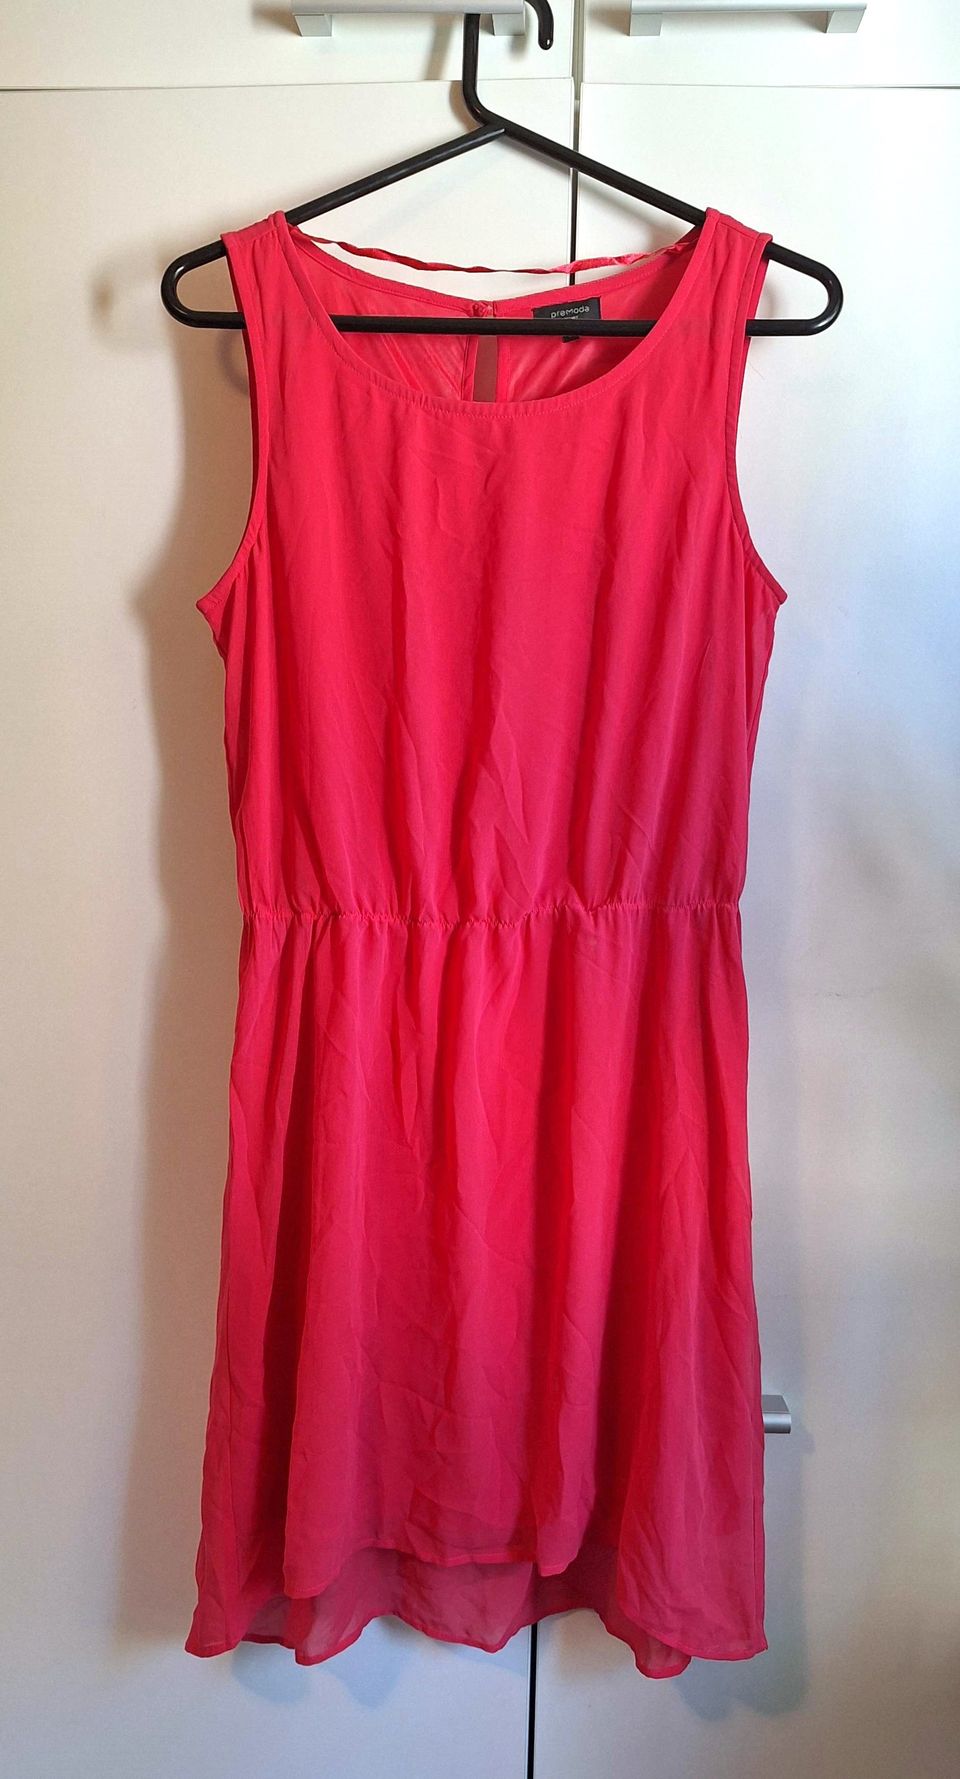 Pinkki mekko koko 36 / S